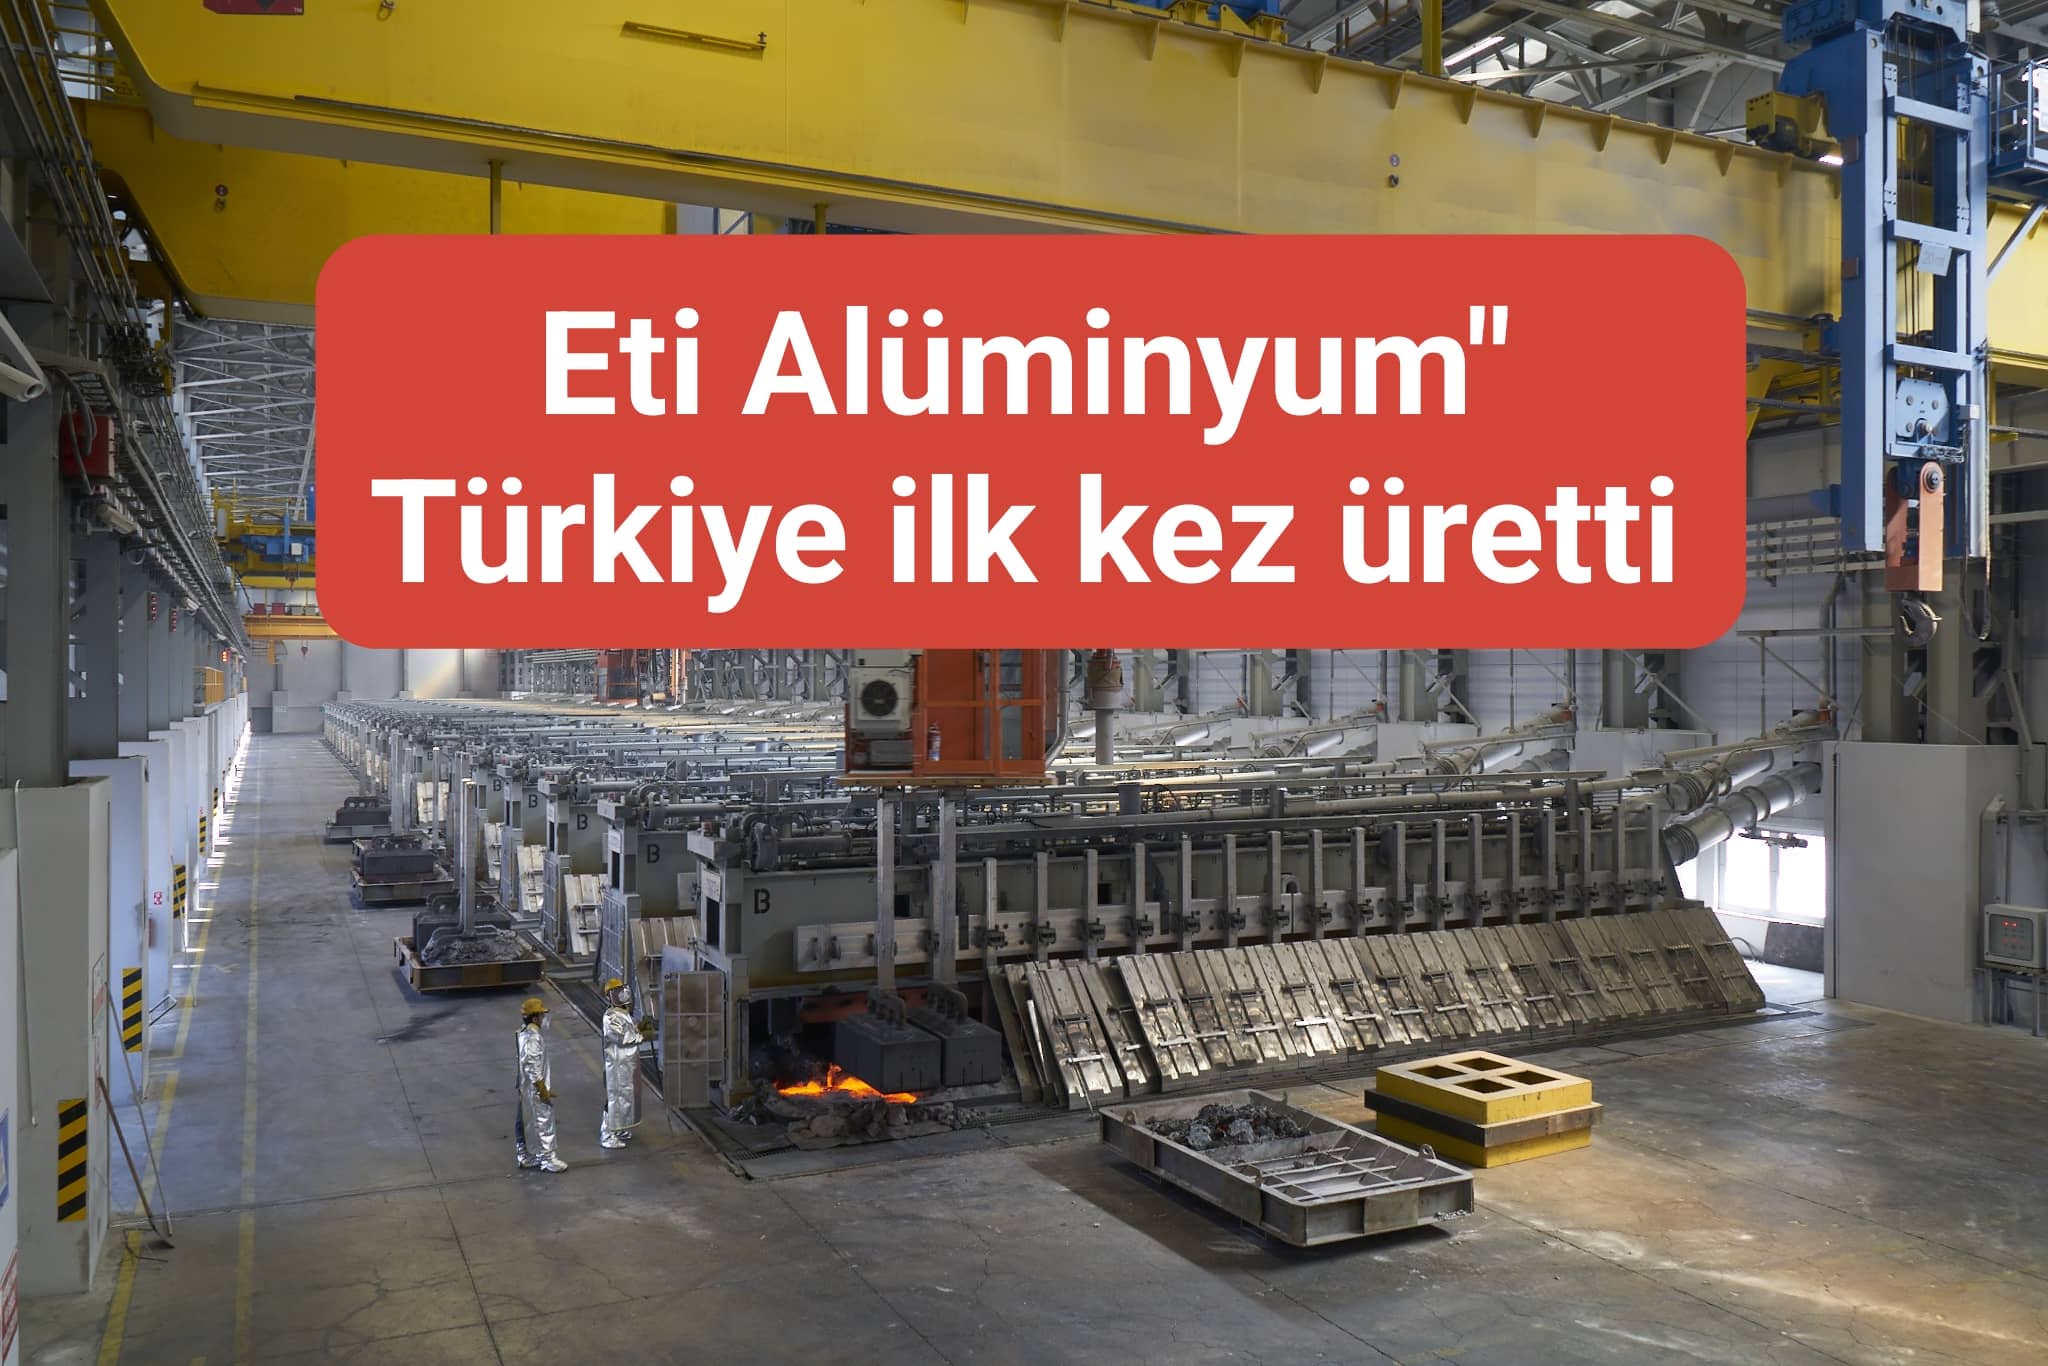 Eti Alüminyum" Türkiye ilk kez üretti